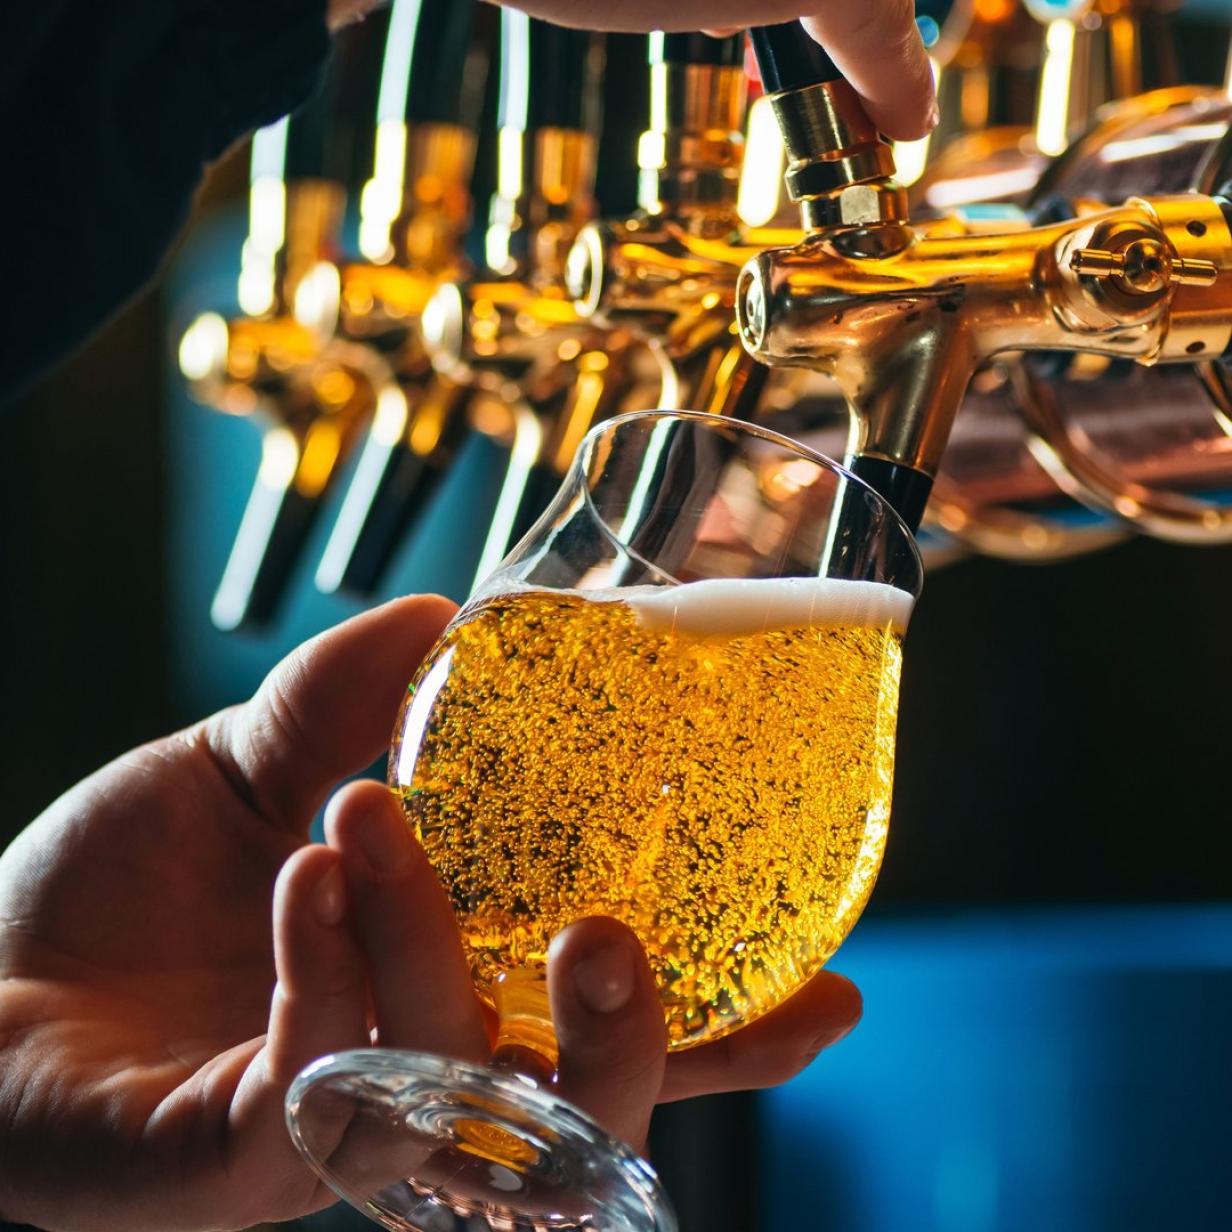 Bier Um 1 7 Mio Euro Von Brauerei Gestohlen 24 Personen Angeklagt Kurier At